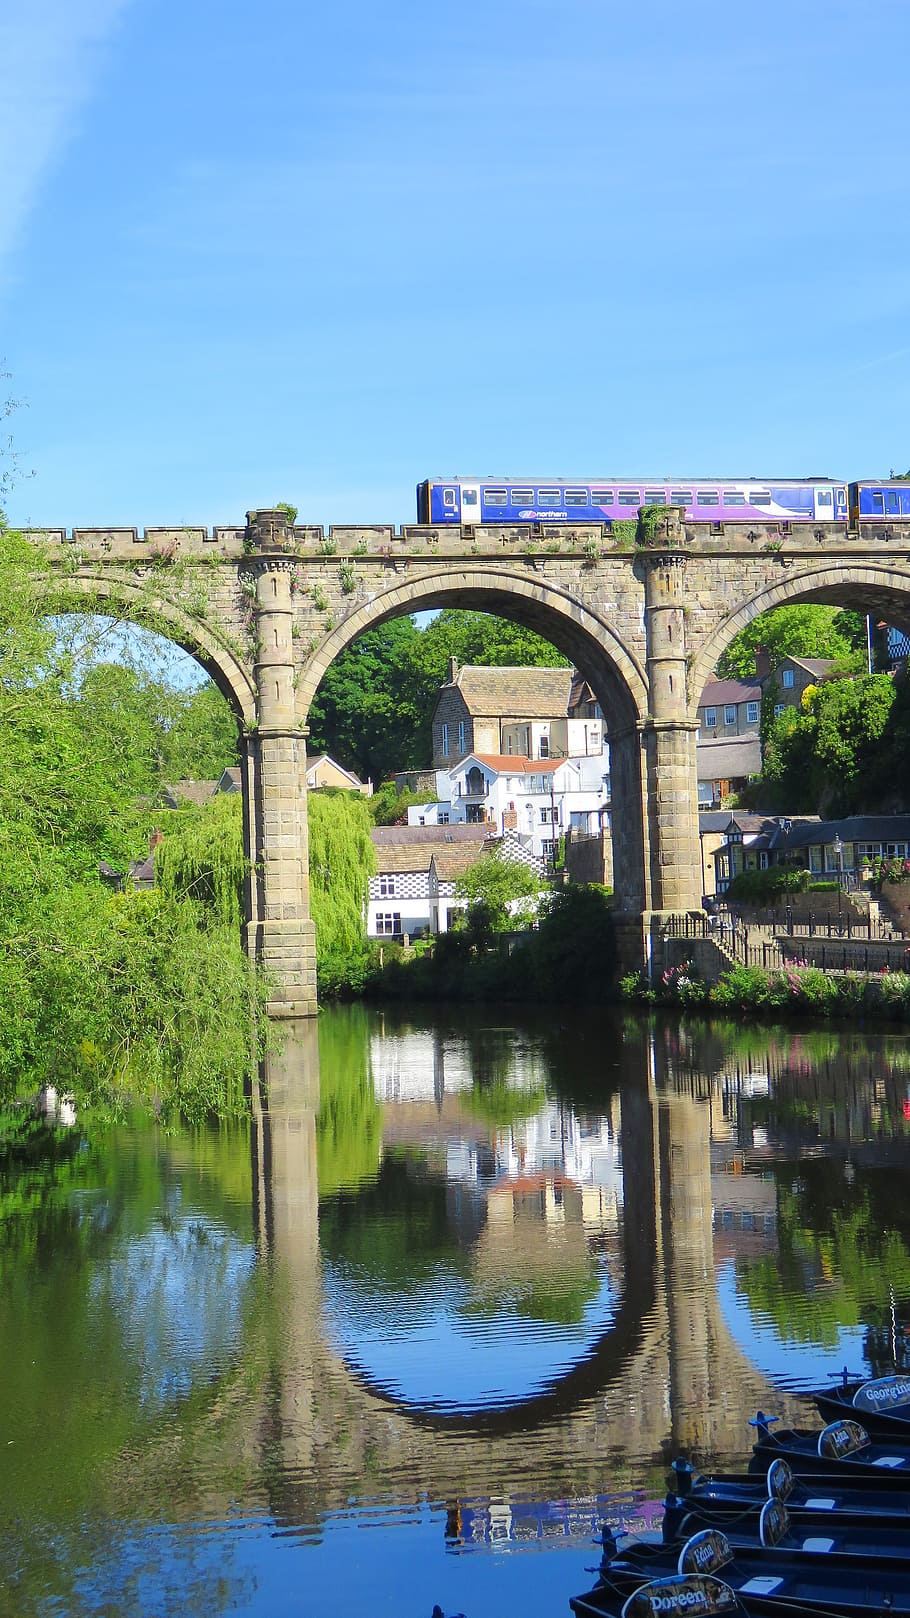 tren en puente, arquitectura, cielo azul, puente, junio de 2015, paisajes, north yorkshire, ubicación al aire libre, fotografía al aire libre, ferrocarril